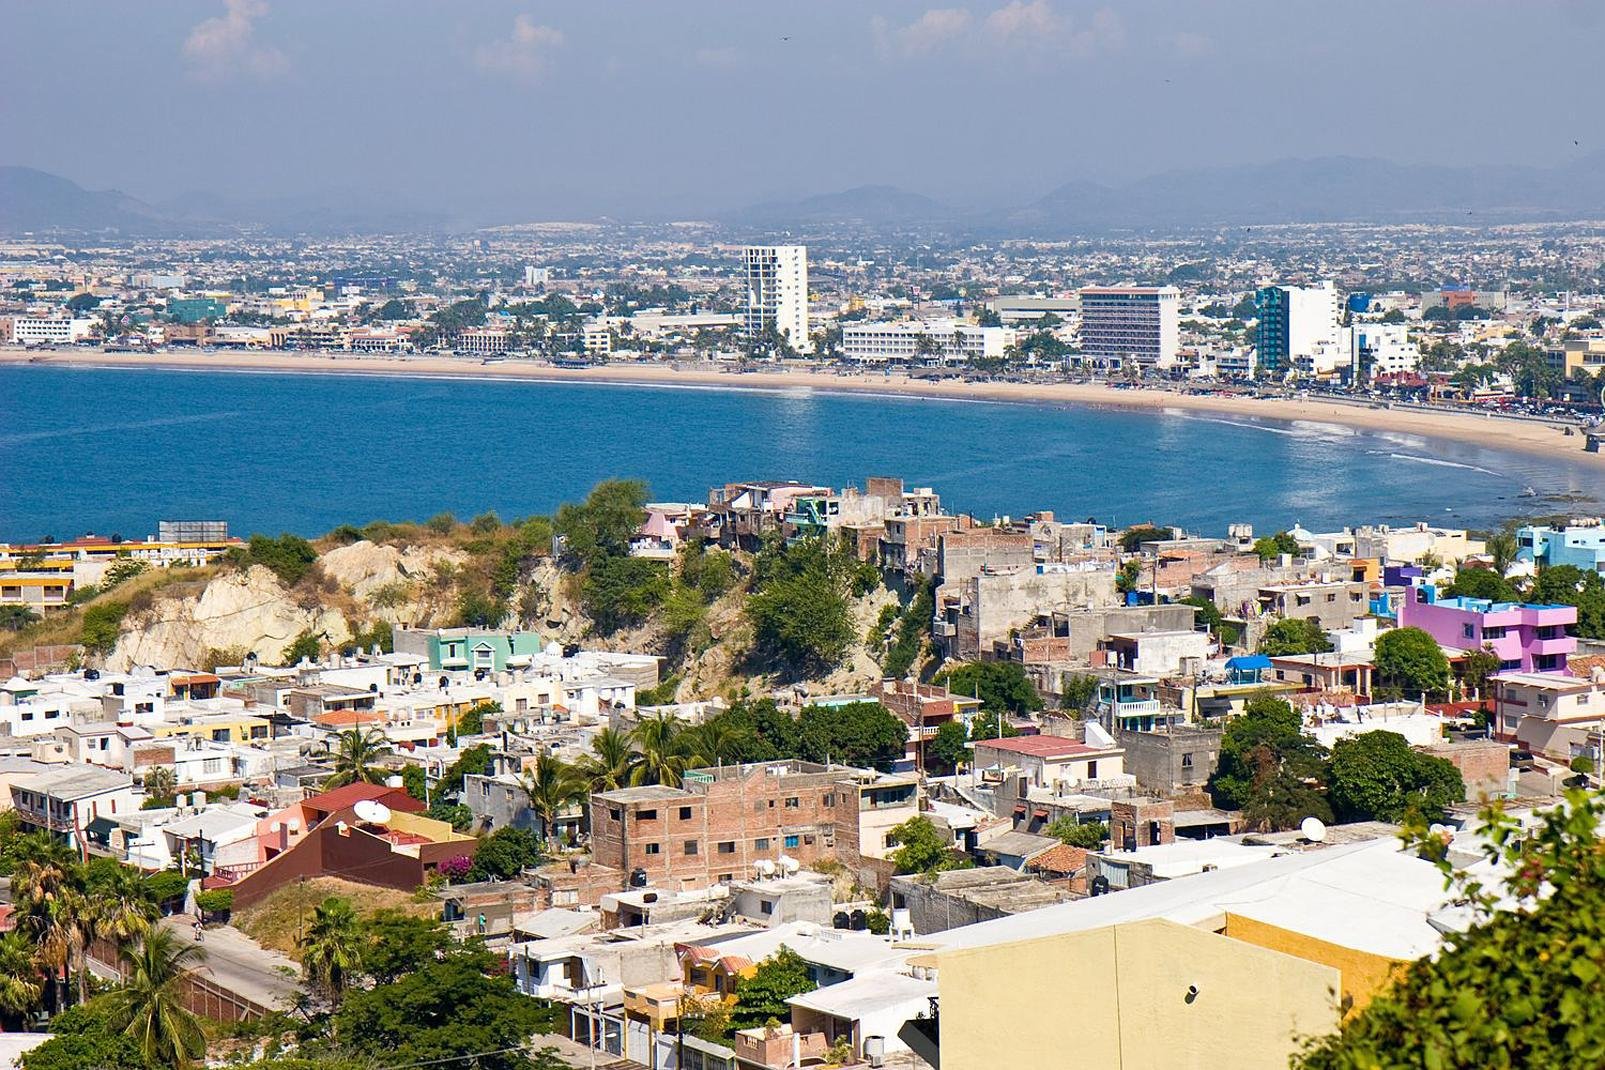 Mazatlán es conocida como la perla del pacífico, es además un famoso puerto localizado en la costa del pacífico mexicano, del que se destacan sus importantes atractivos turísticos y sitios de interés, como es el caso de su faro, así como el malecón, la isla de piedra y por supuesto su acuario, el cual es el más grande de todo México.
Mazatlán se transforma durante sus importantes fiestas populares, ...